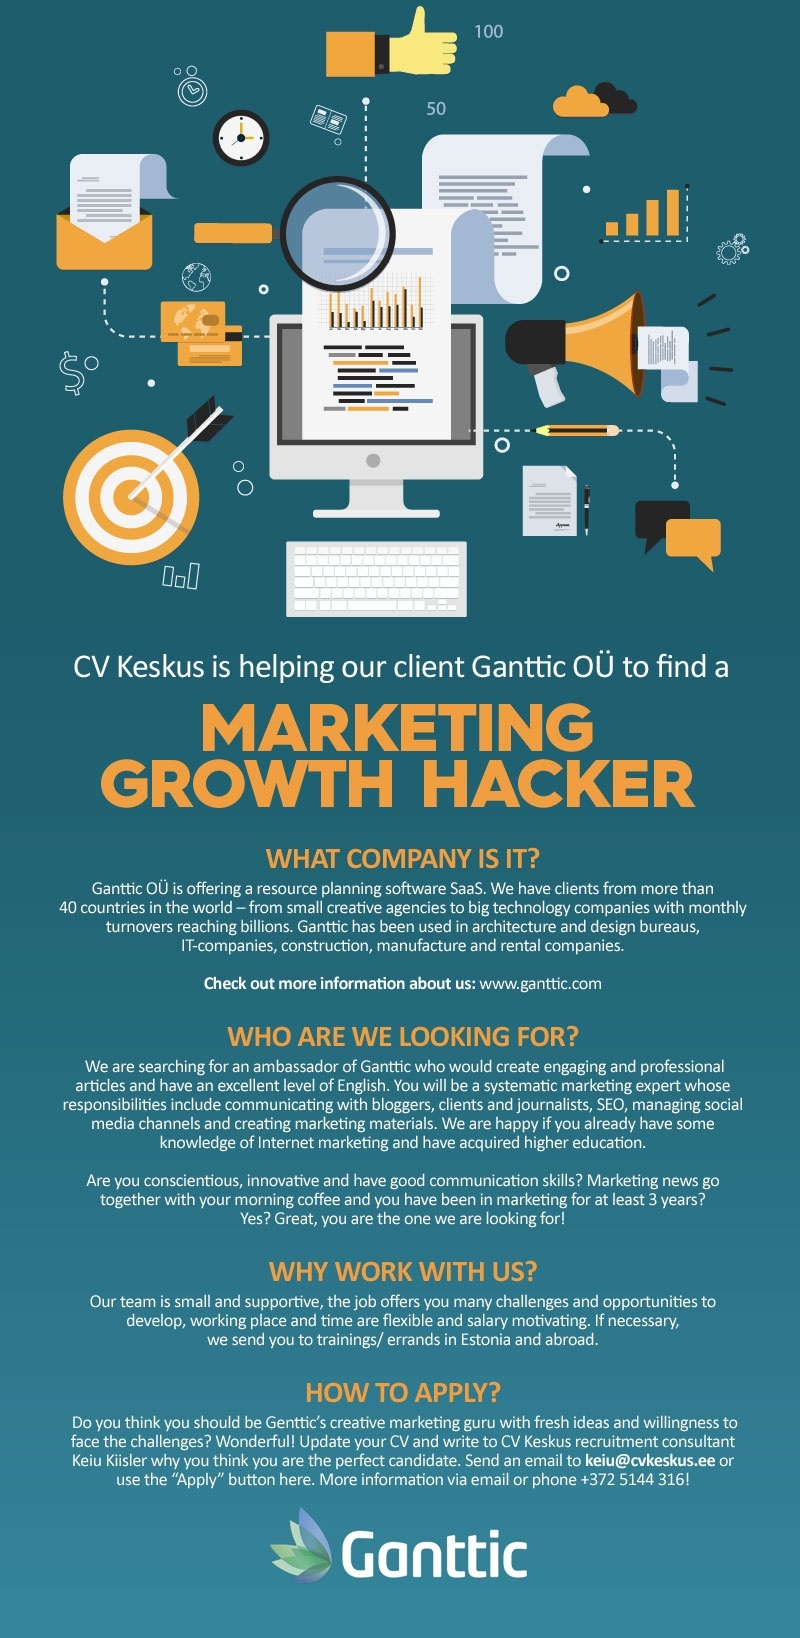 CV KESKUS OÜ Ganttic OÜ is looking for Marketing Growth Hacker